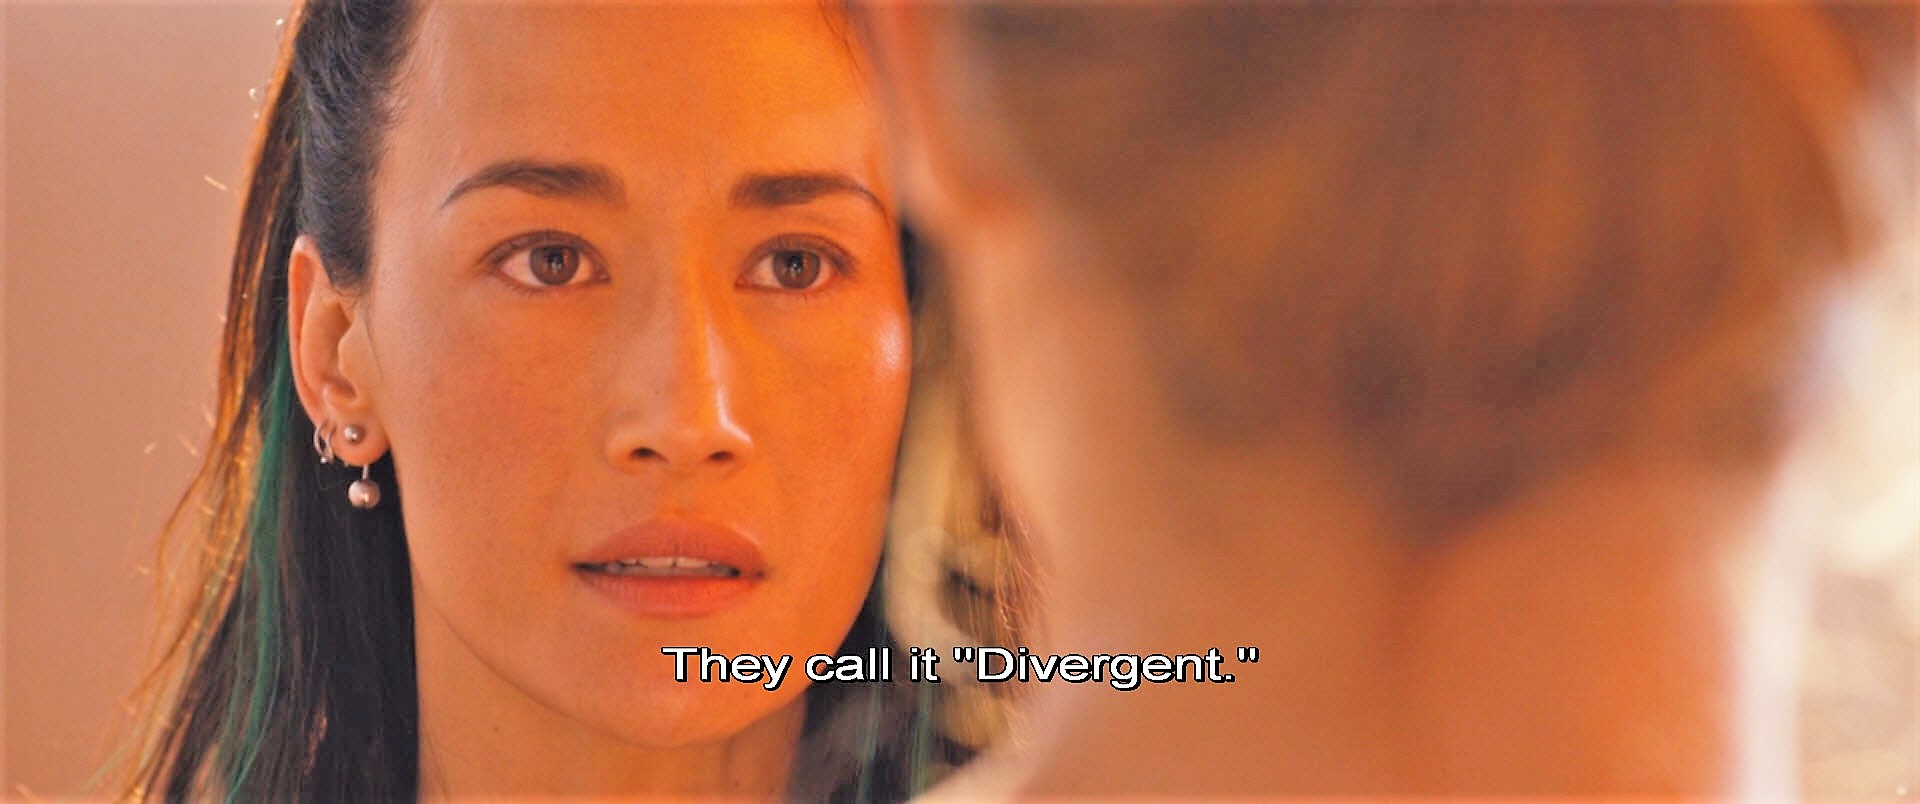 影视英语 - Divergent - abcxyz123.com